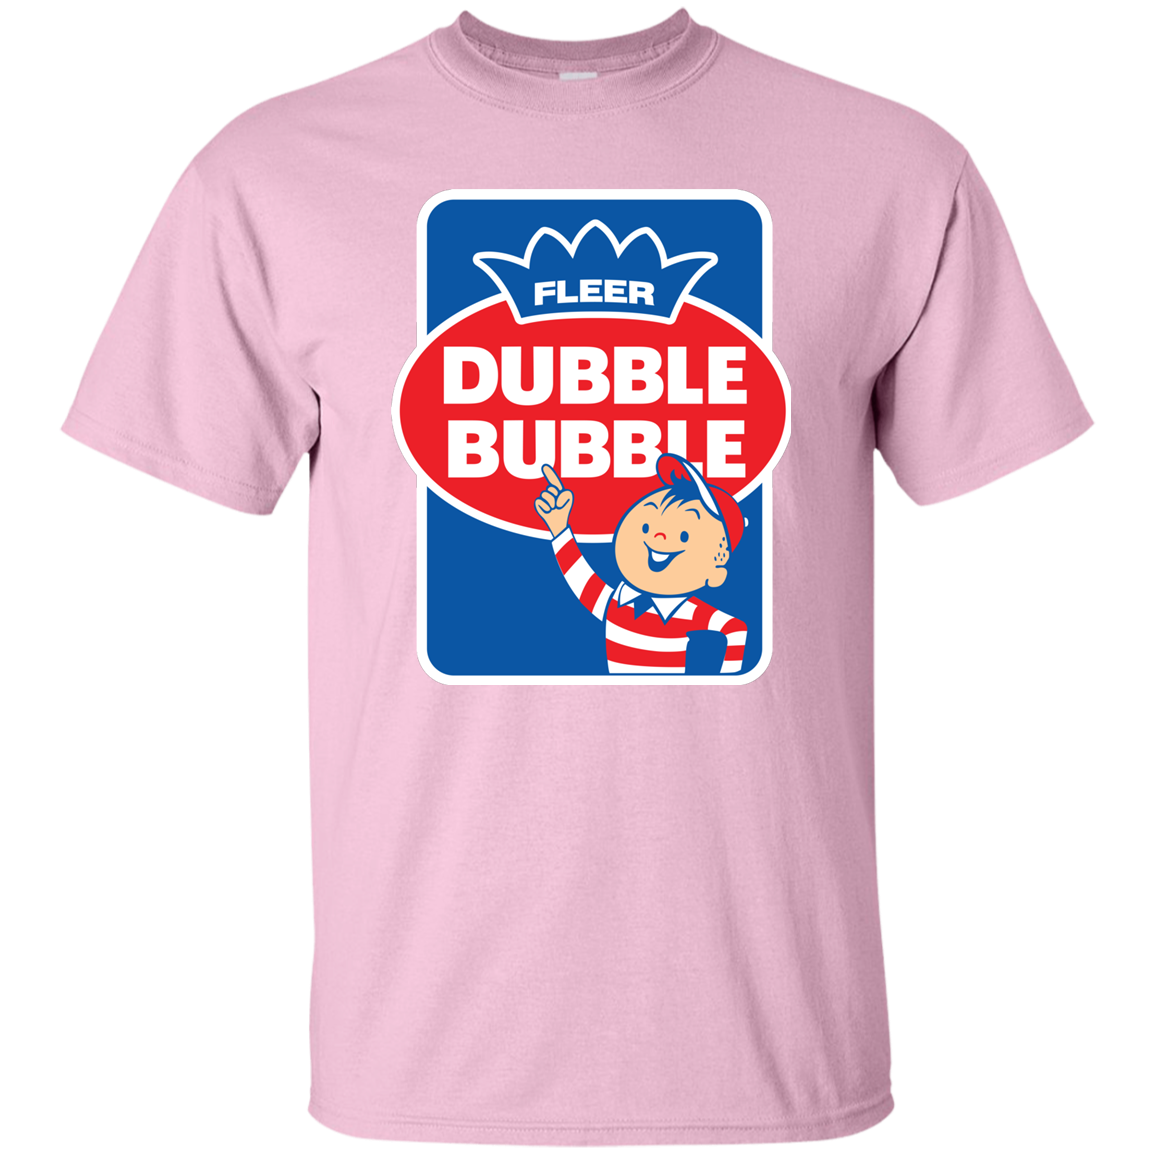 Double Bubble, Fleer, Bubble Gum, Candy, Bazooka Joe, T-Shirt - Light ...